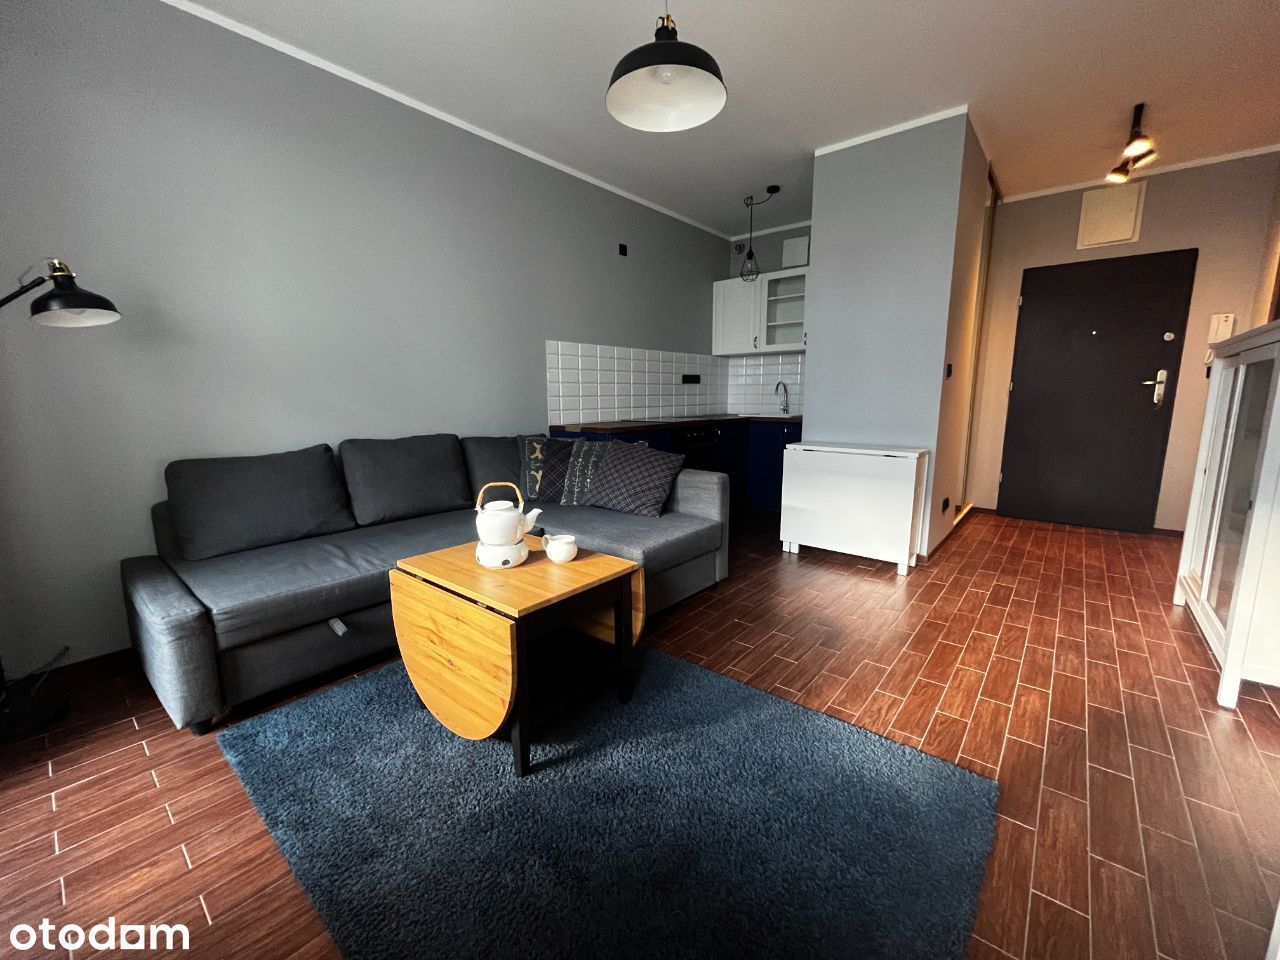 2 pokoje | 34,4 m2 + ogródek 23,5 m2 | Strzeżone